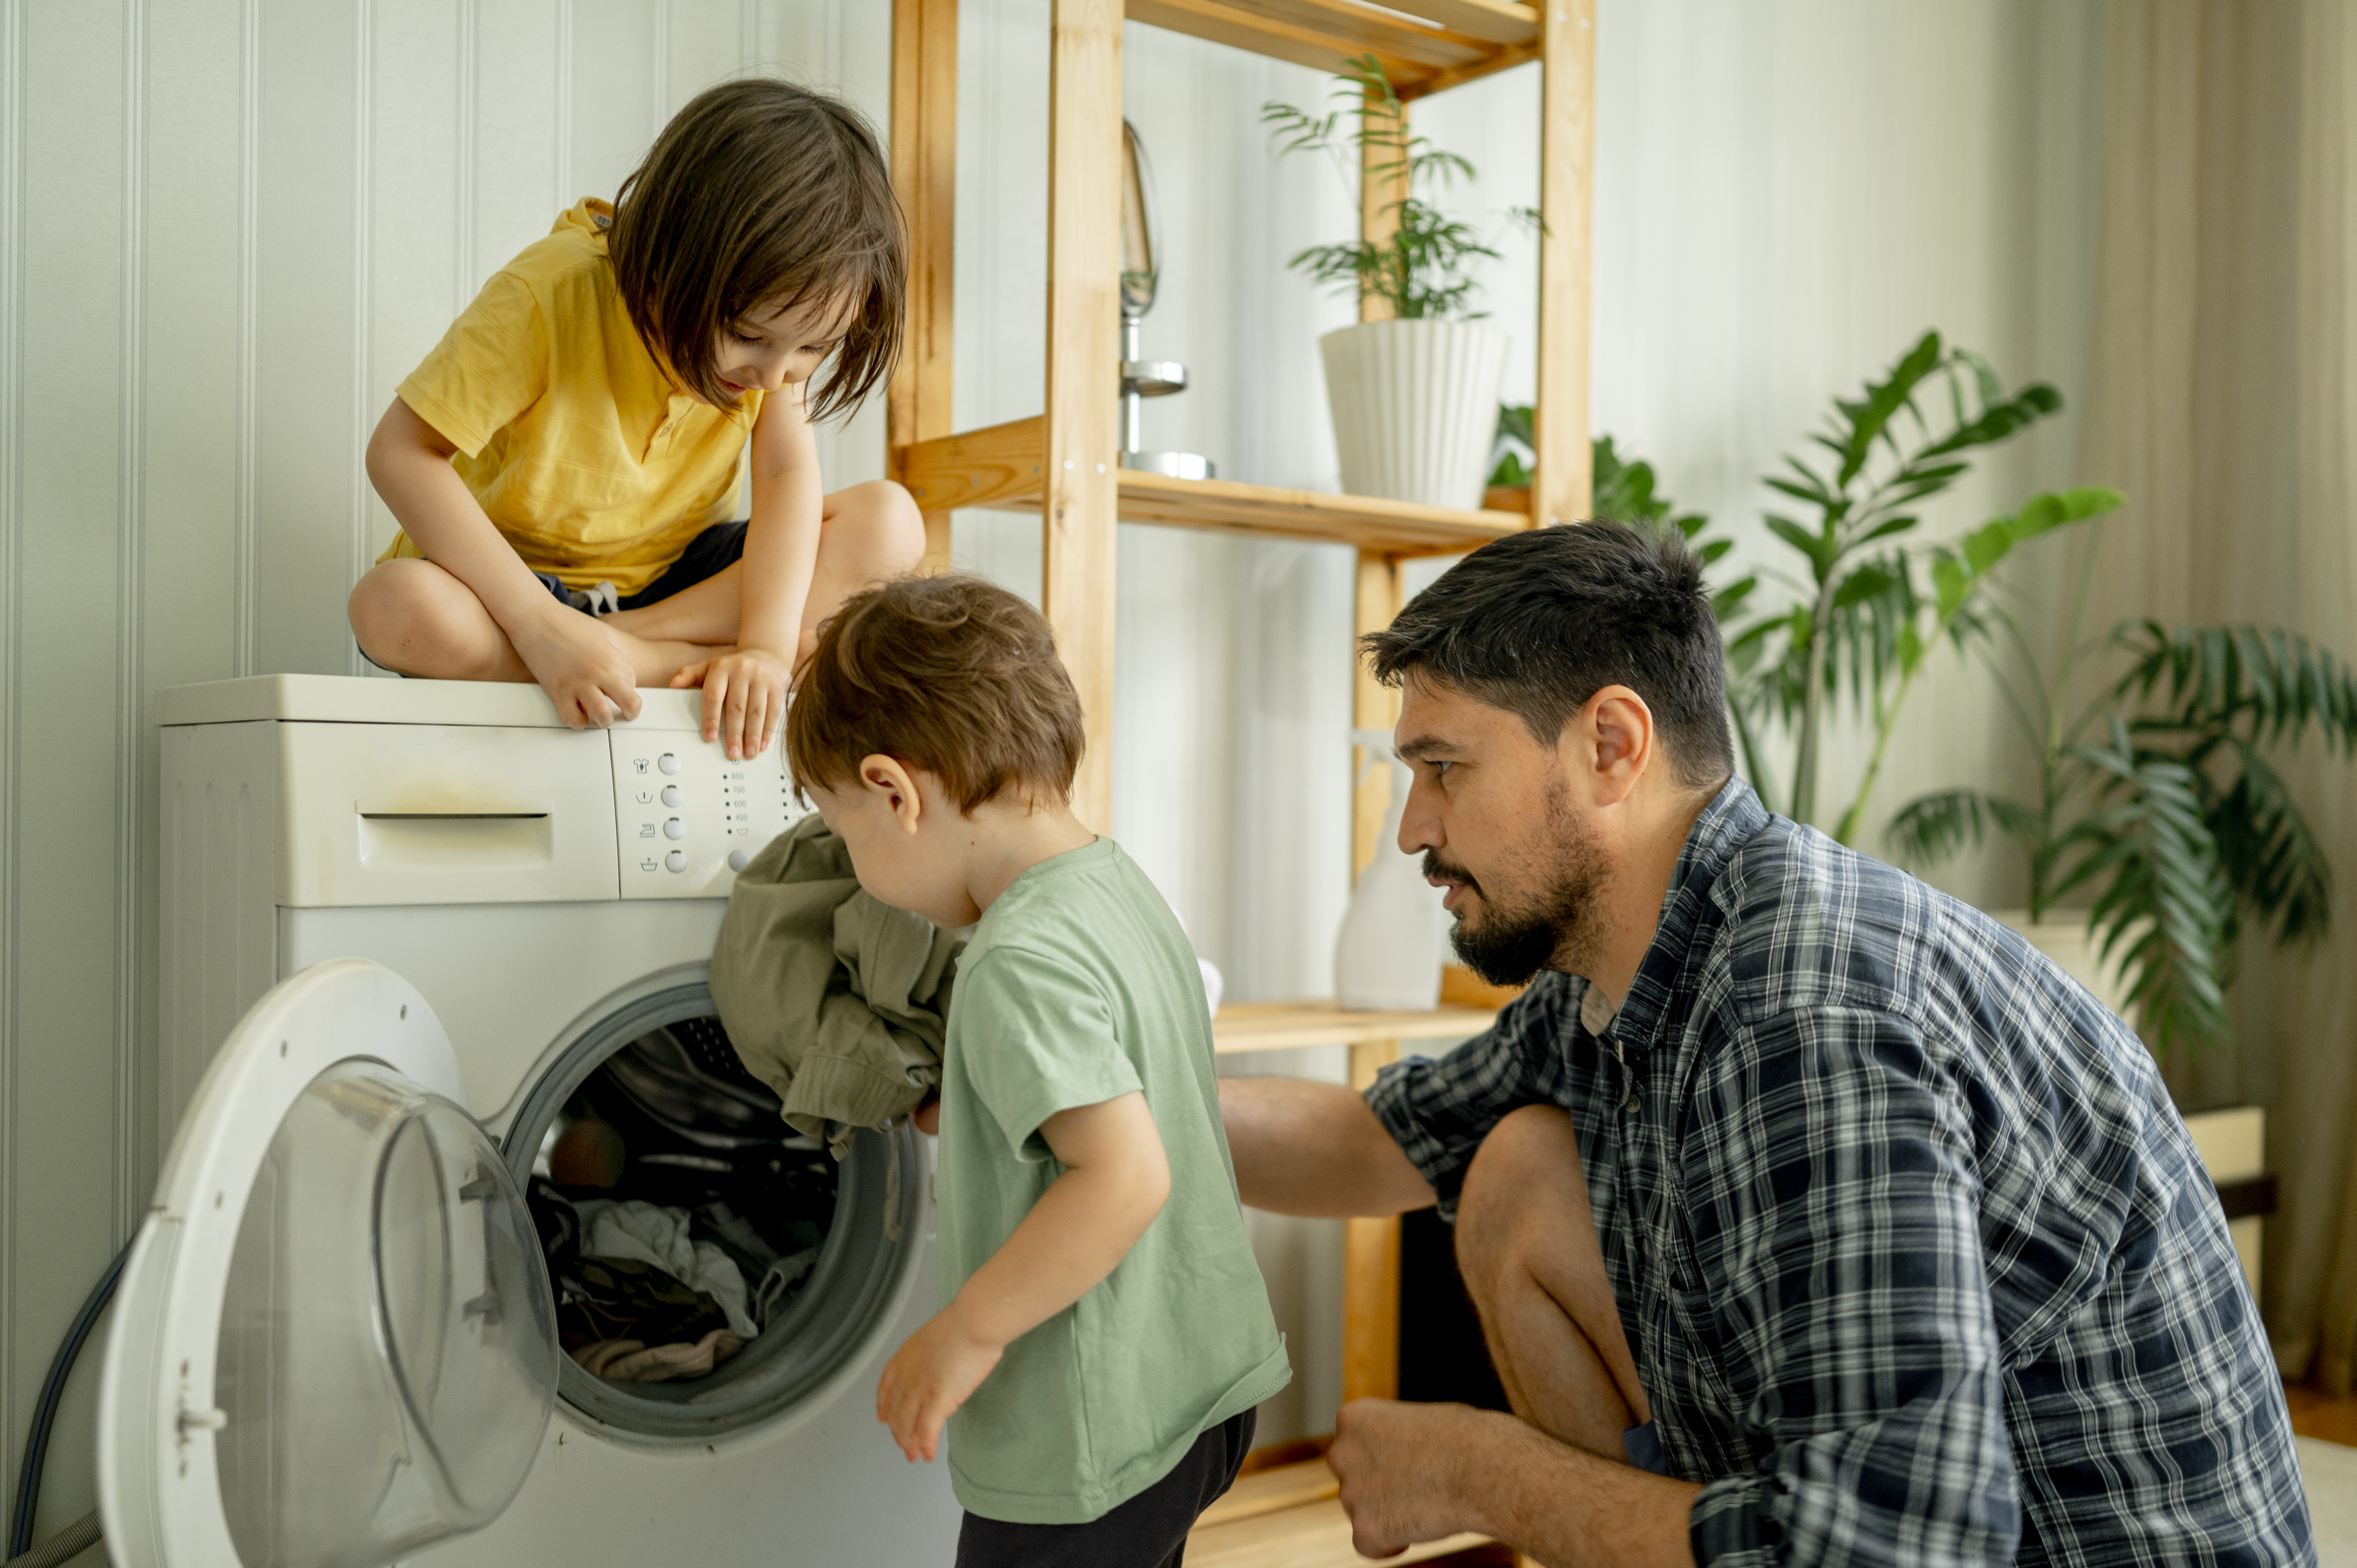 Père et enfants mettant des vêtements dans la machine à laver | Source : Getty Images